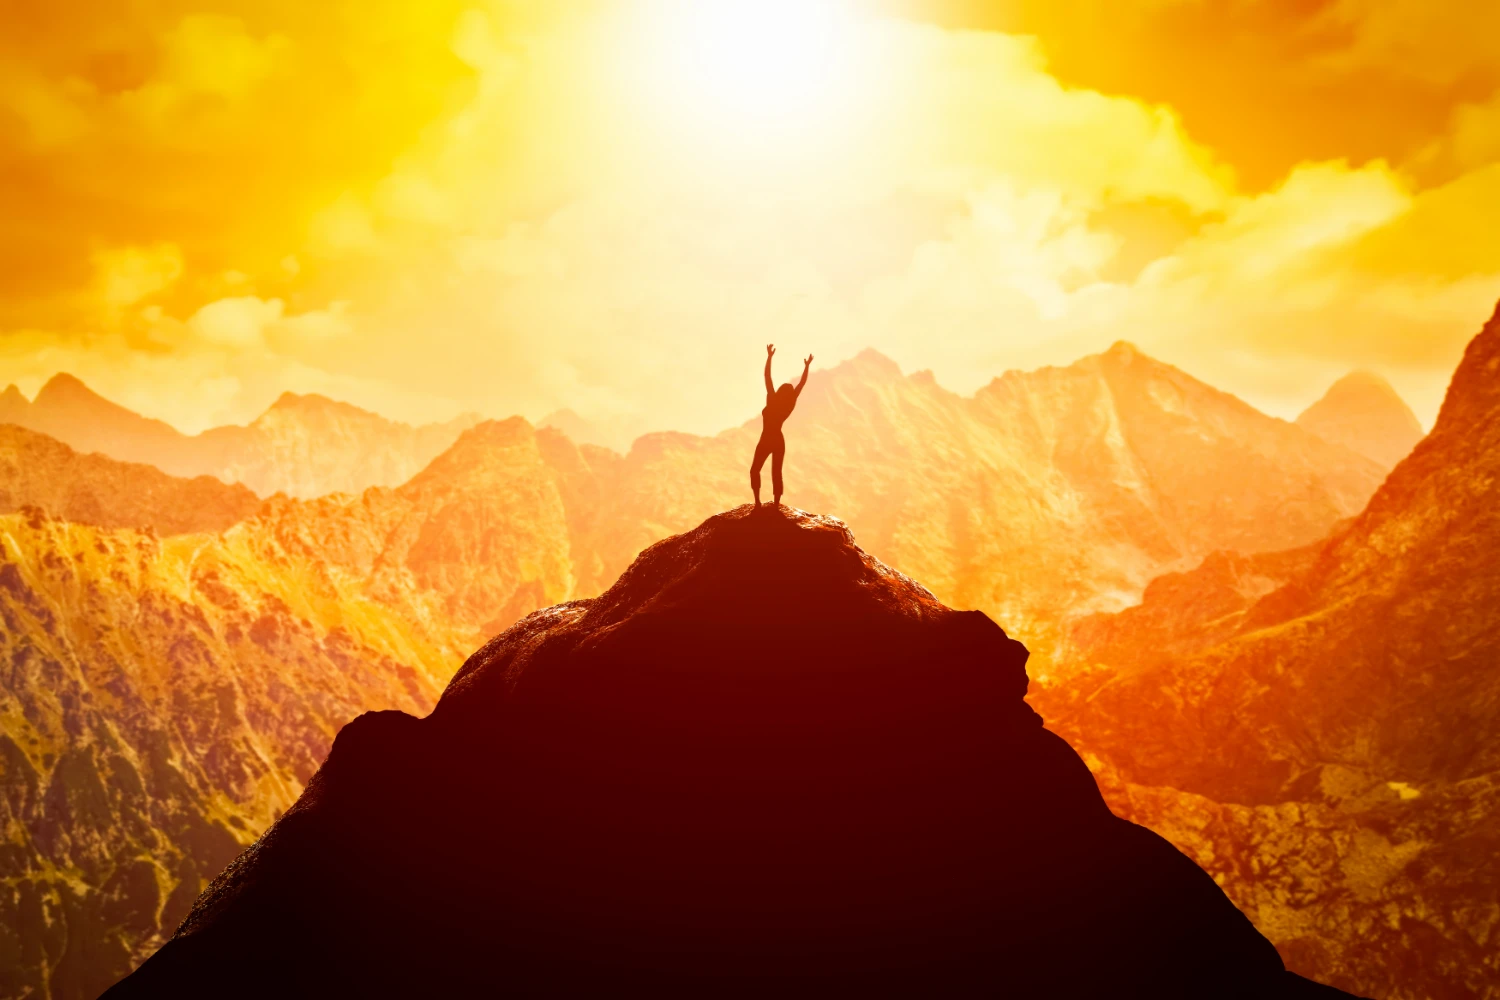 فردی که بر روی قعله کوه ایستاده است و دستان خود را به نشانه موفقیت باز کرده و خورشید از پشت به آن میتابد